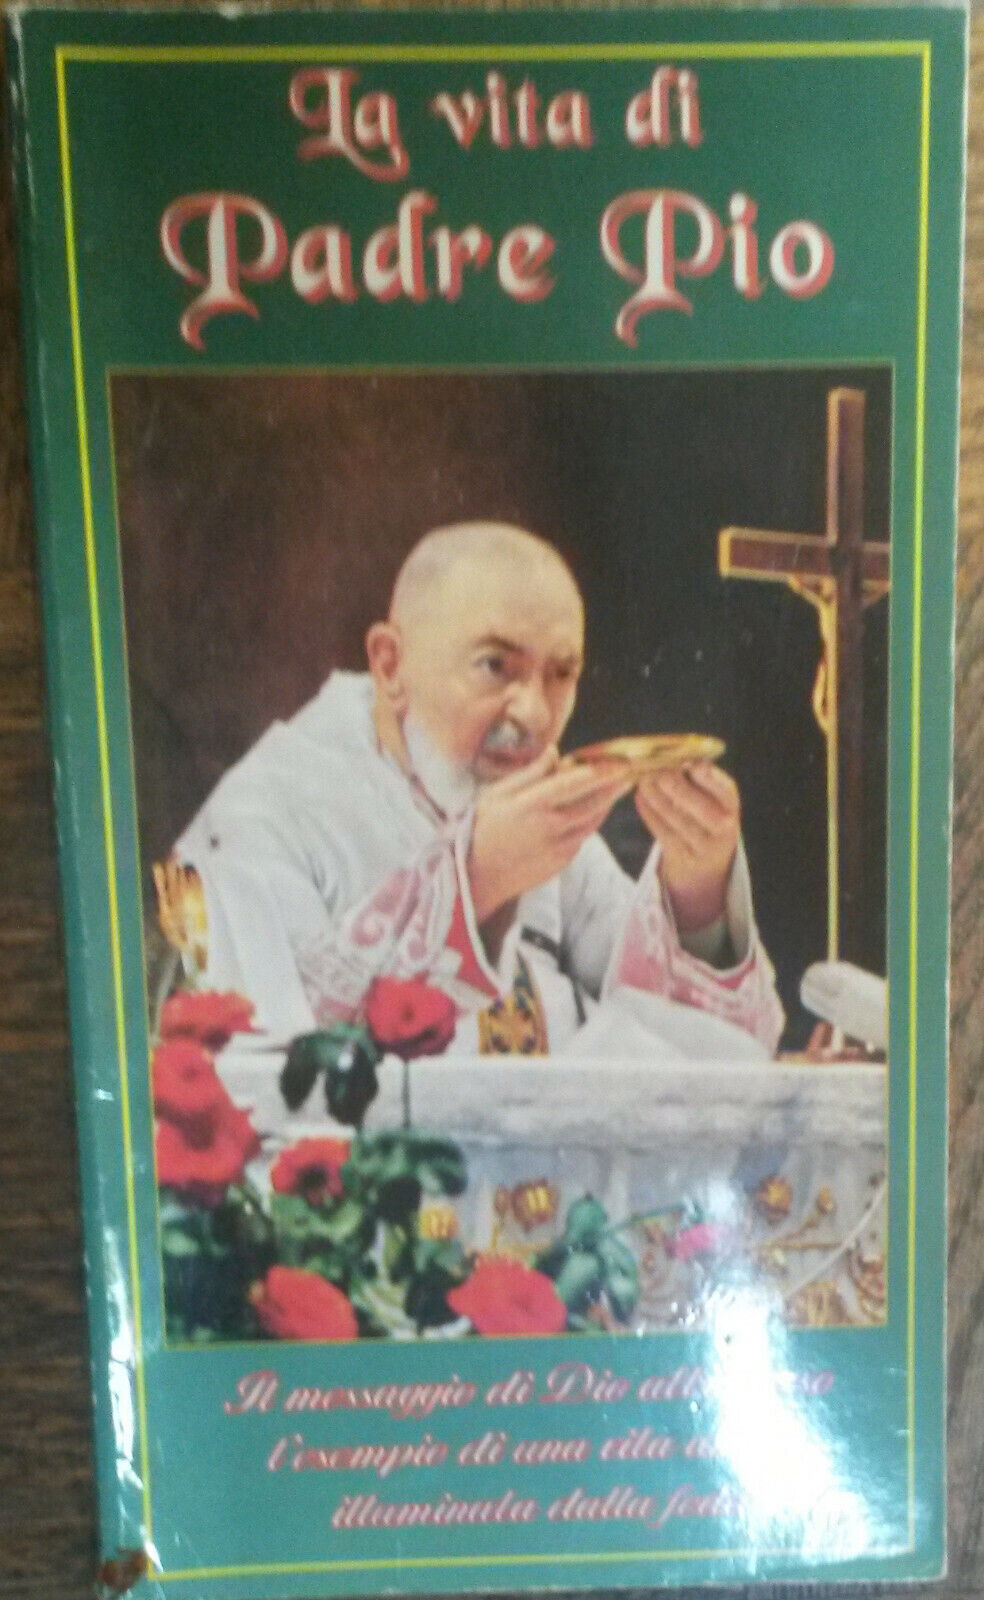 La vita di Padre Pio - AA.VV. -  New Cards,1993 - R